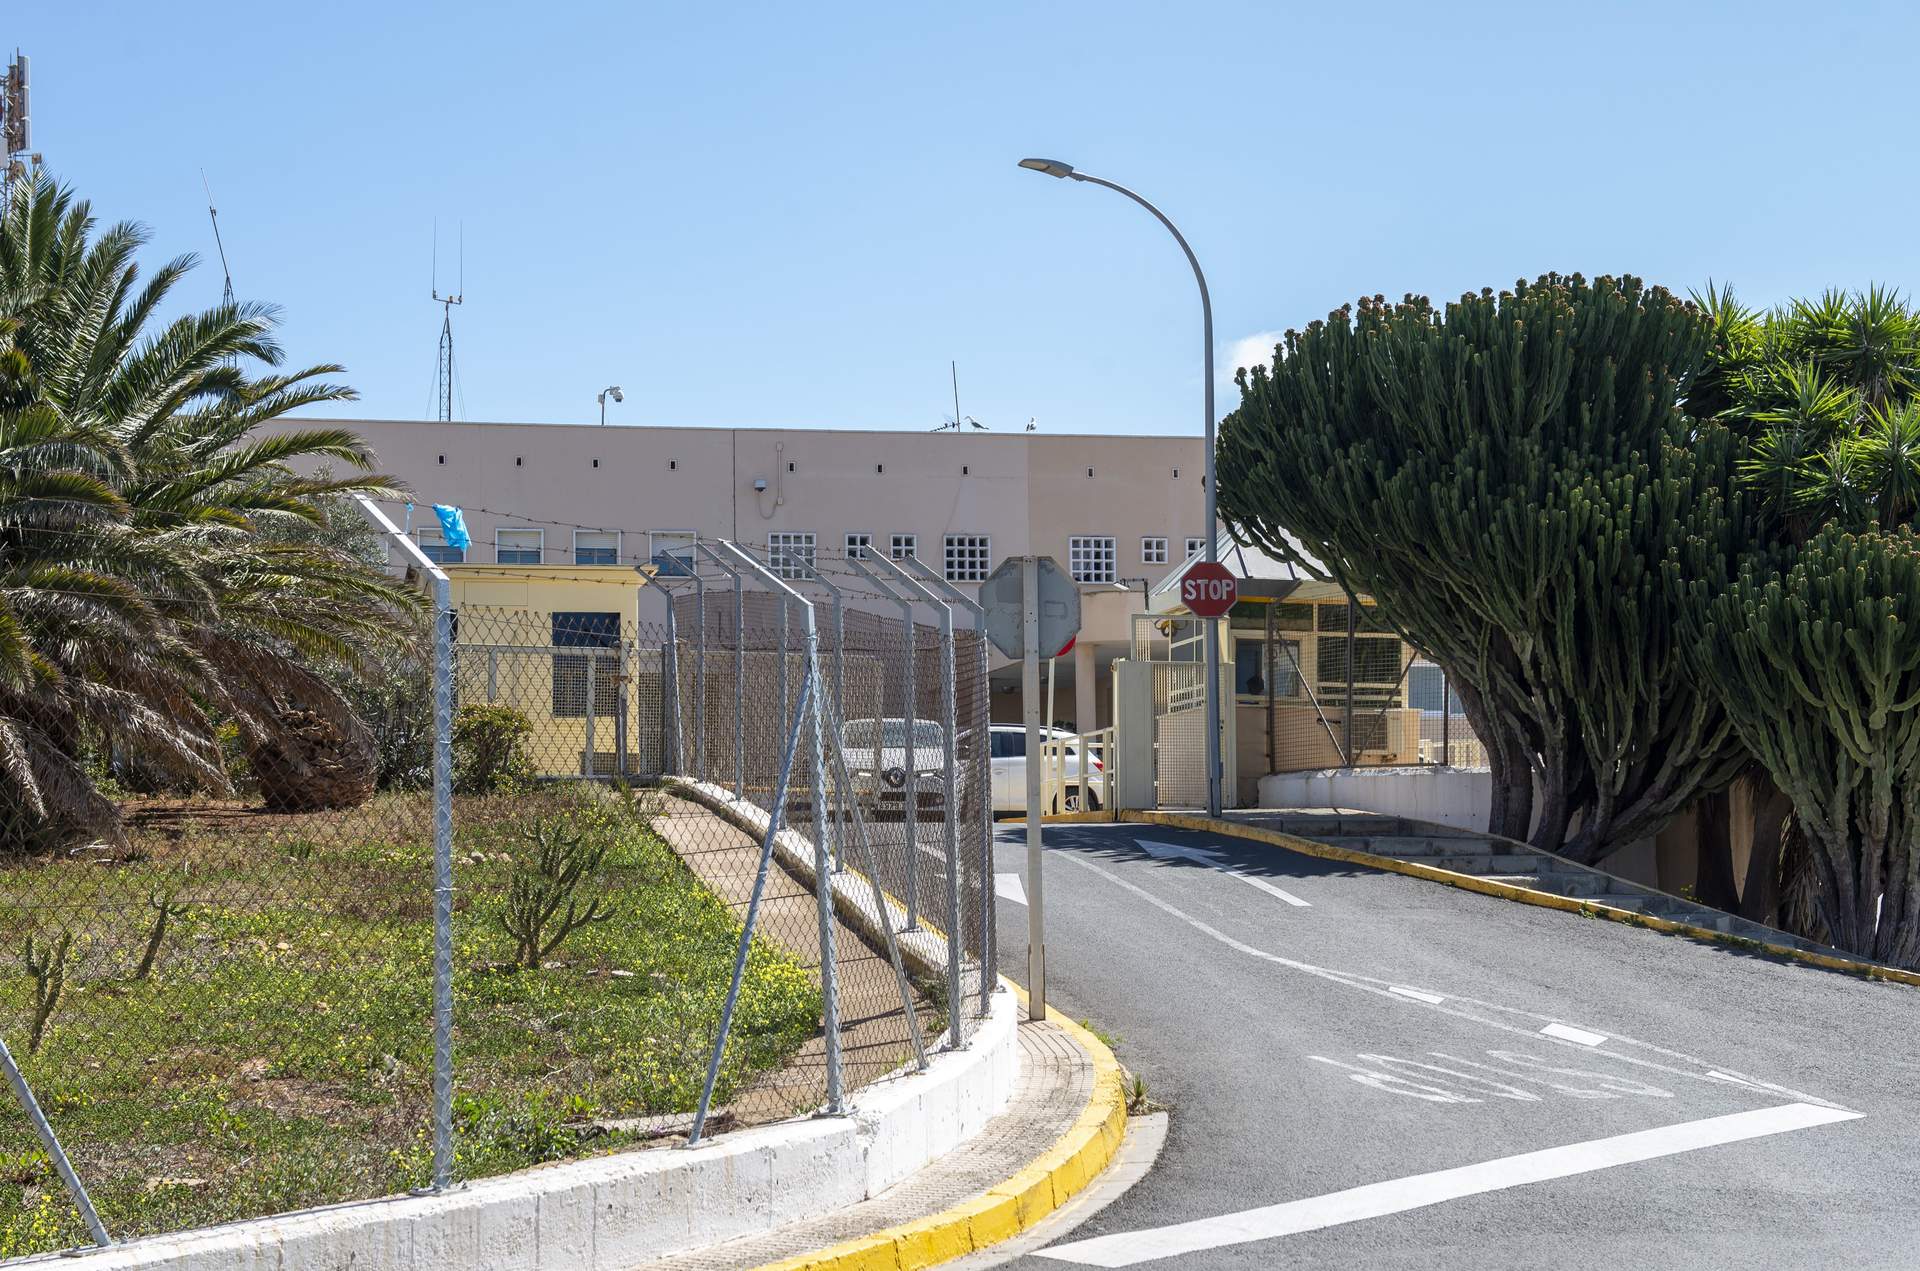 Justifican la prisión sin fianza de exconsejeros del Gobierno de Melilla por riesgo de fuga a Marruecos en moto acuática